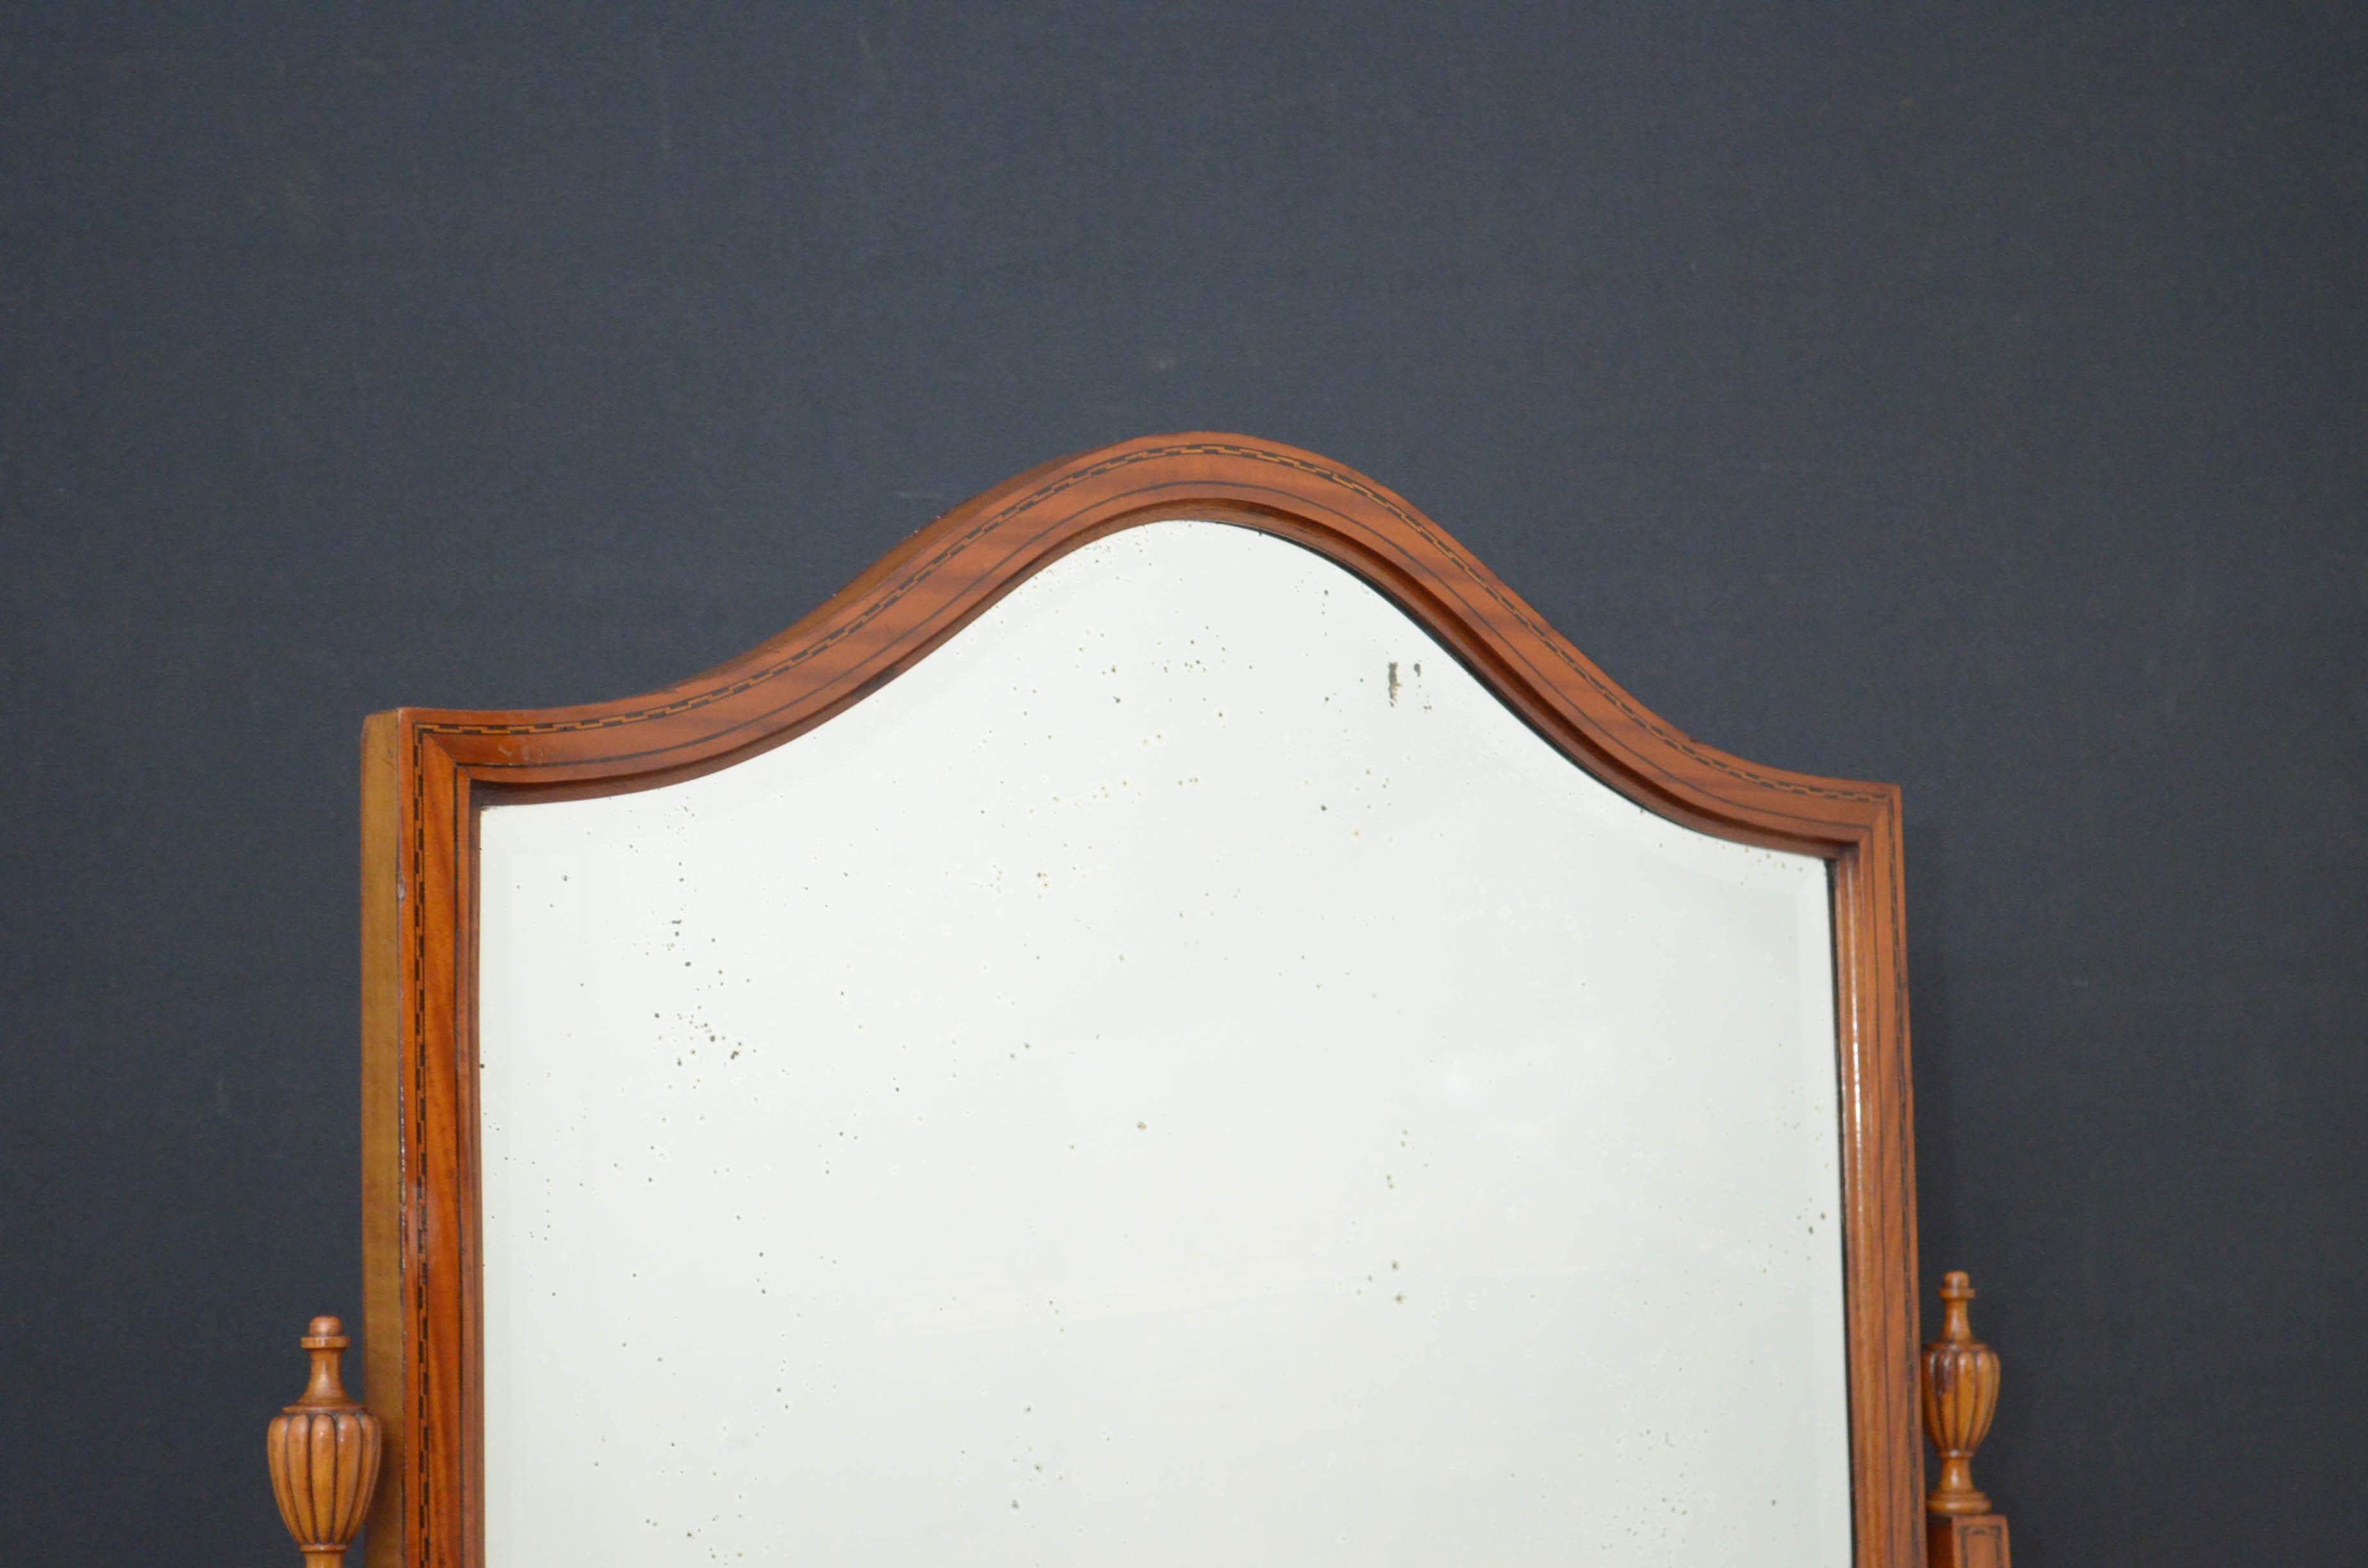 Sn4752, un élégant miroir chevalier édouardien en bois satiné et marqueté, en forme de bouclier, avec un miroir d'origine à bord biseauté avec un peu d'argenture dans le cadre marqueté et des supports finement marquetés avec des fleurons cannelés